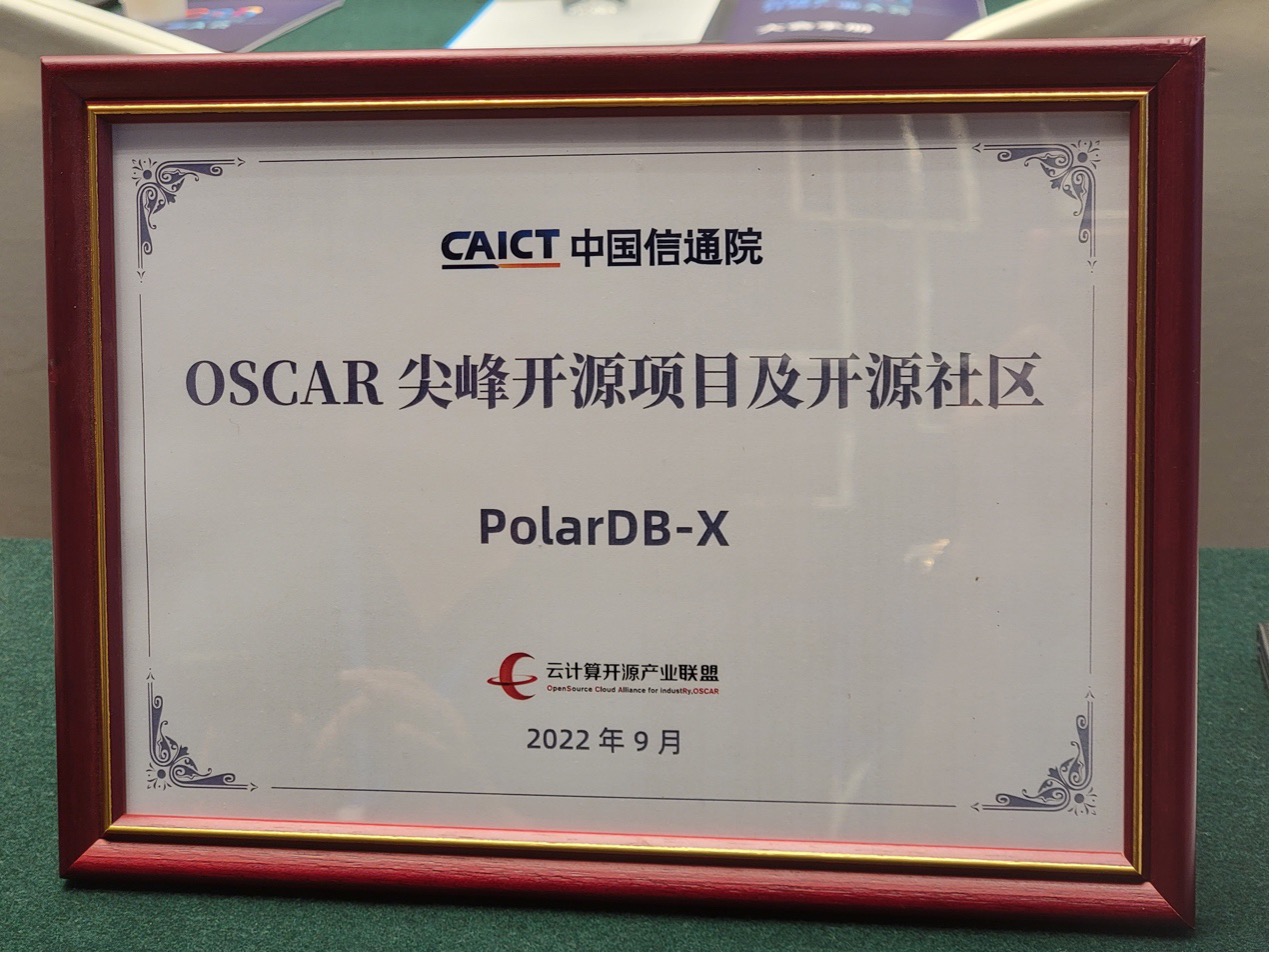 阿里云 PolarDB-X 荣获 “2022 OSCAR 尖峰开源项目及开源社区” 奖_开源社区_04